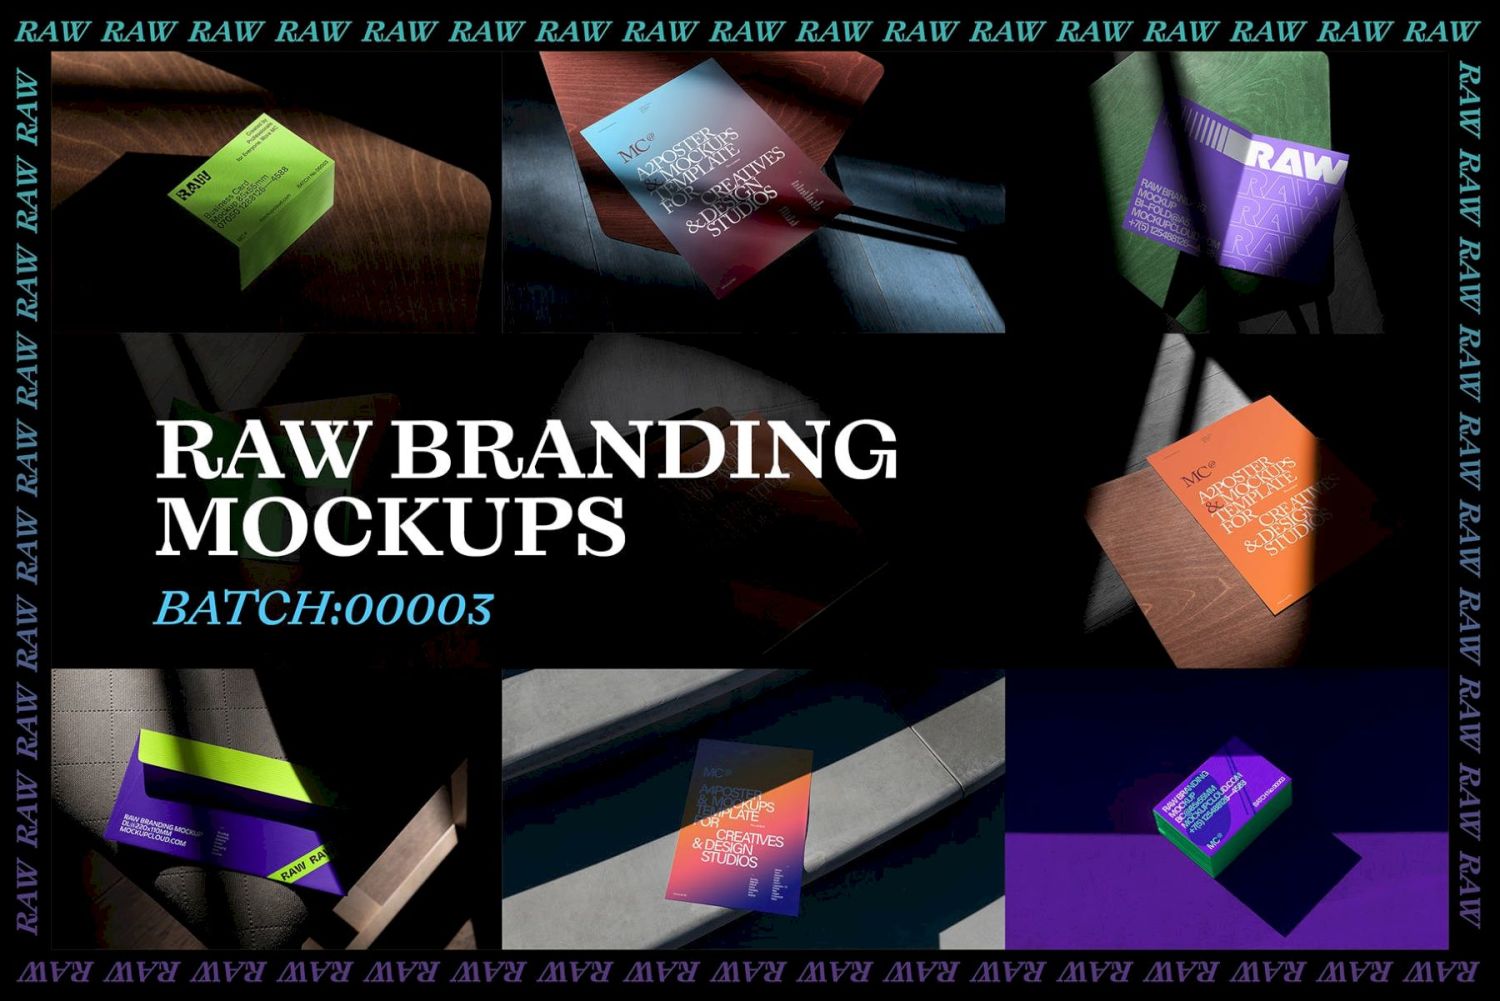 自然光照片品牌样机 Vol. 3 Raw Branding Mockups / Batch 00003插图